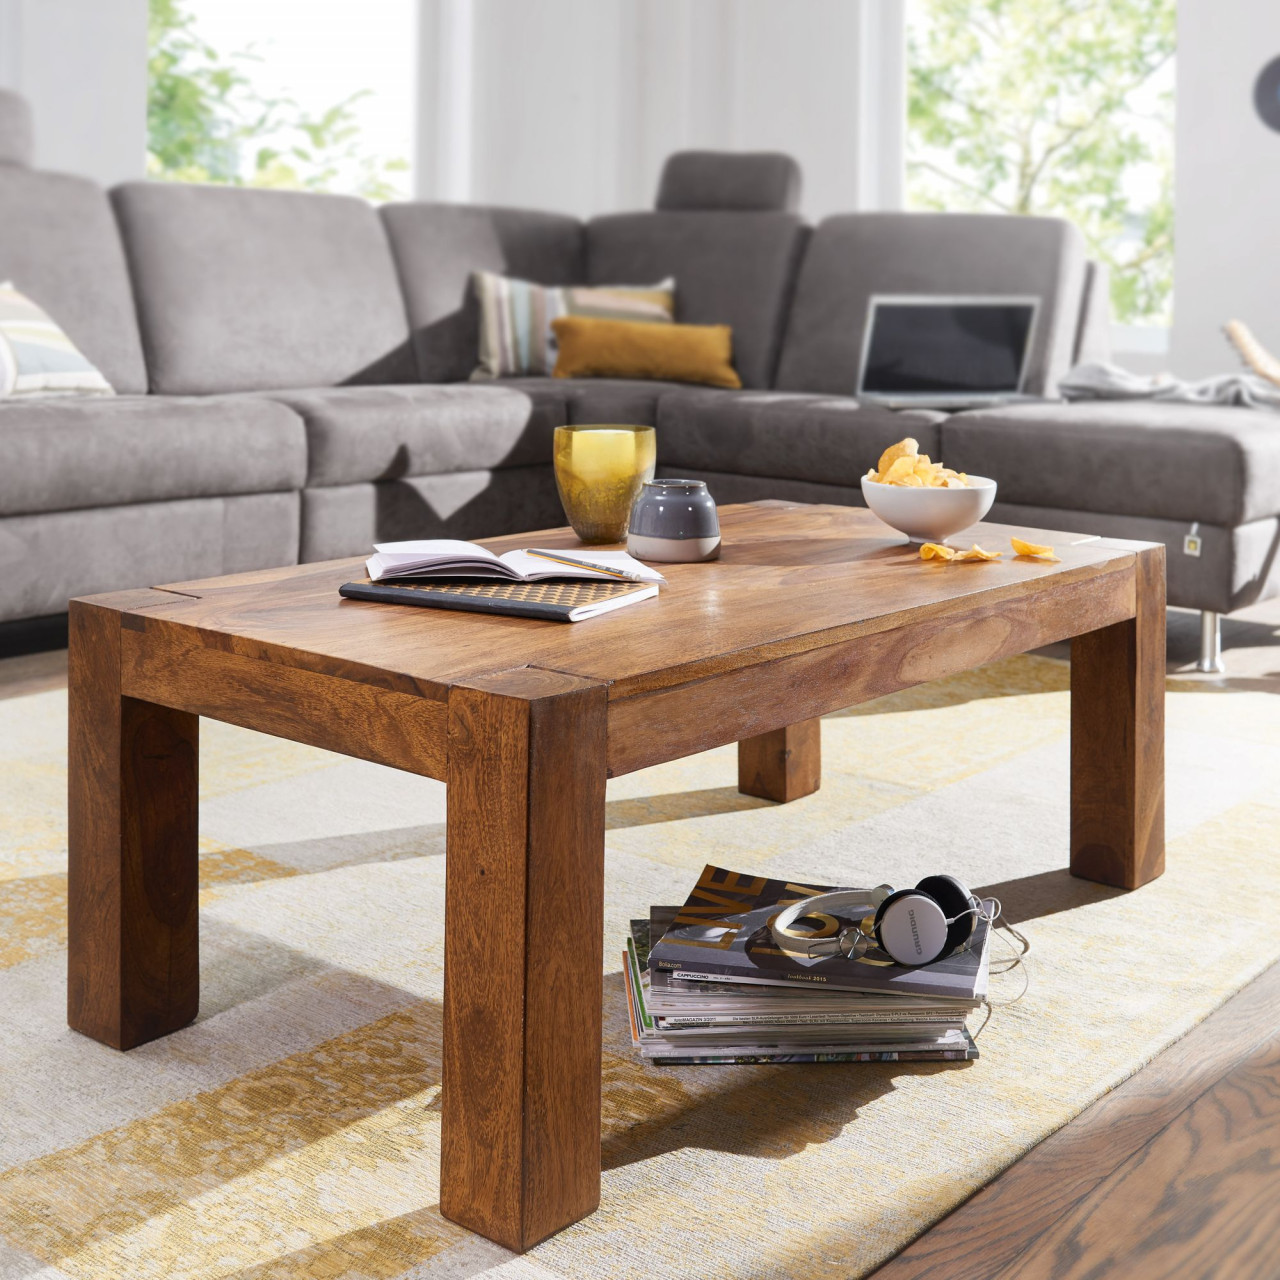 Couchtisch Massiv-Holz Sheesham 110cm breit Wohnzimmer-Tisch Design dunkel-braun Landhaus-Stil Beistelltisch von Wohnling